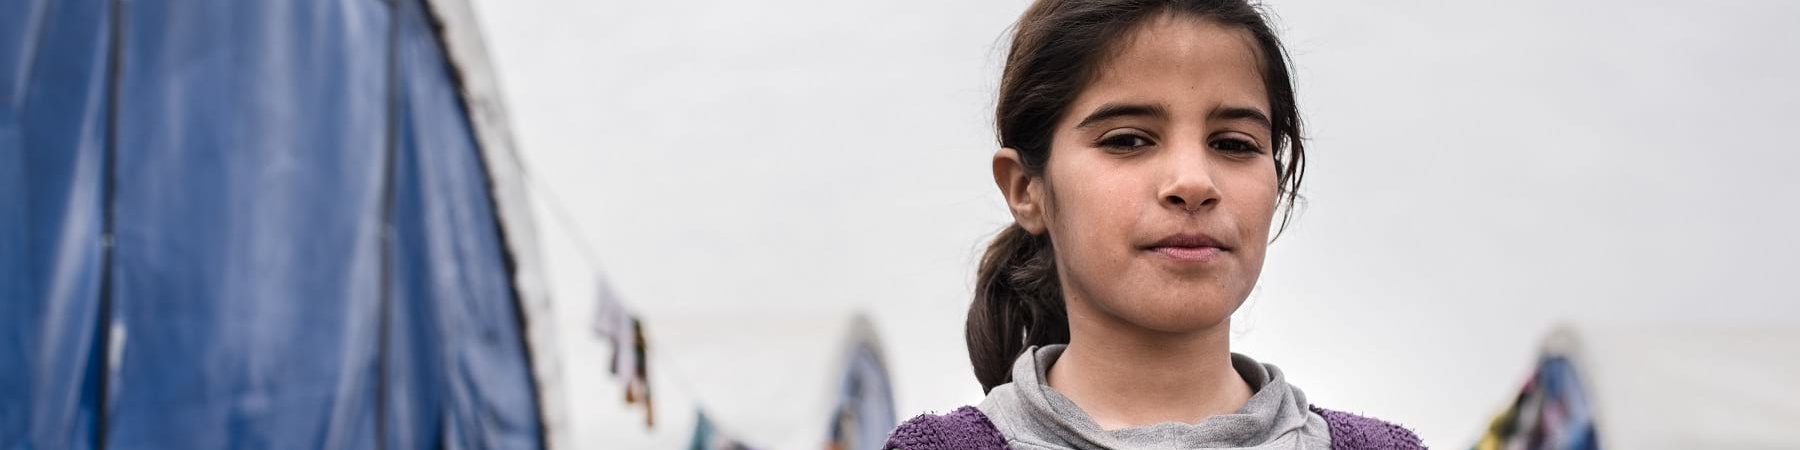 bambina irachena di circa 12 anni è accanto a una tenda di un campo rifugiati, è ripresa a mezzo busto e indossa una felpa grigia e viola. I suoi capelli sono castani e legati in una coda